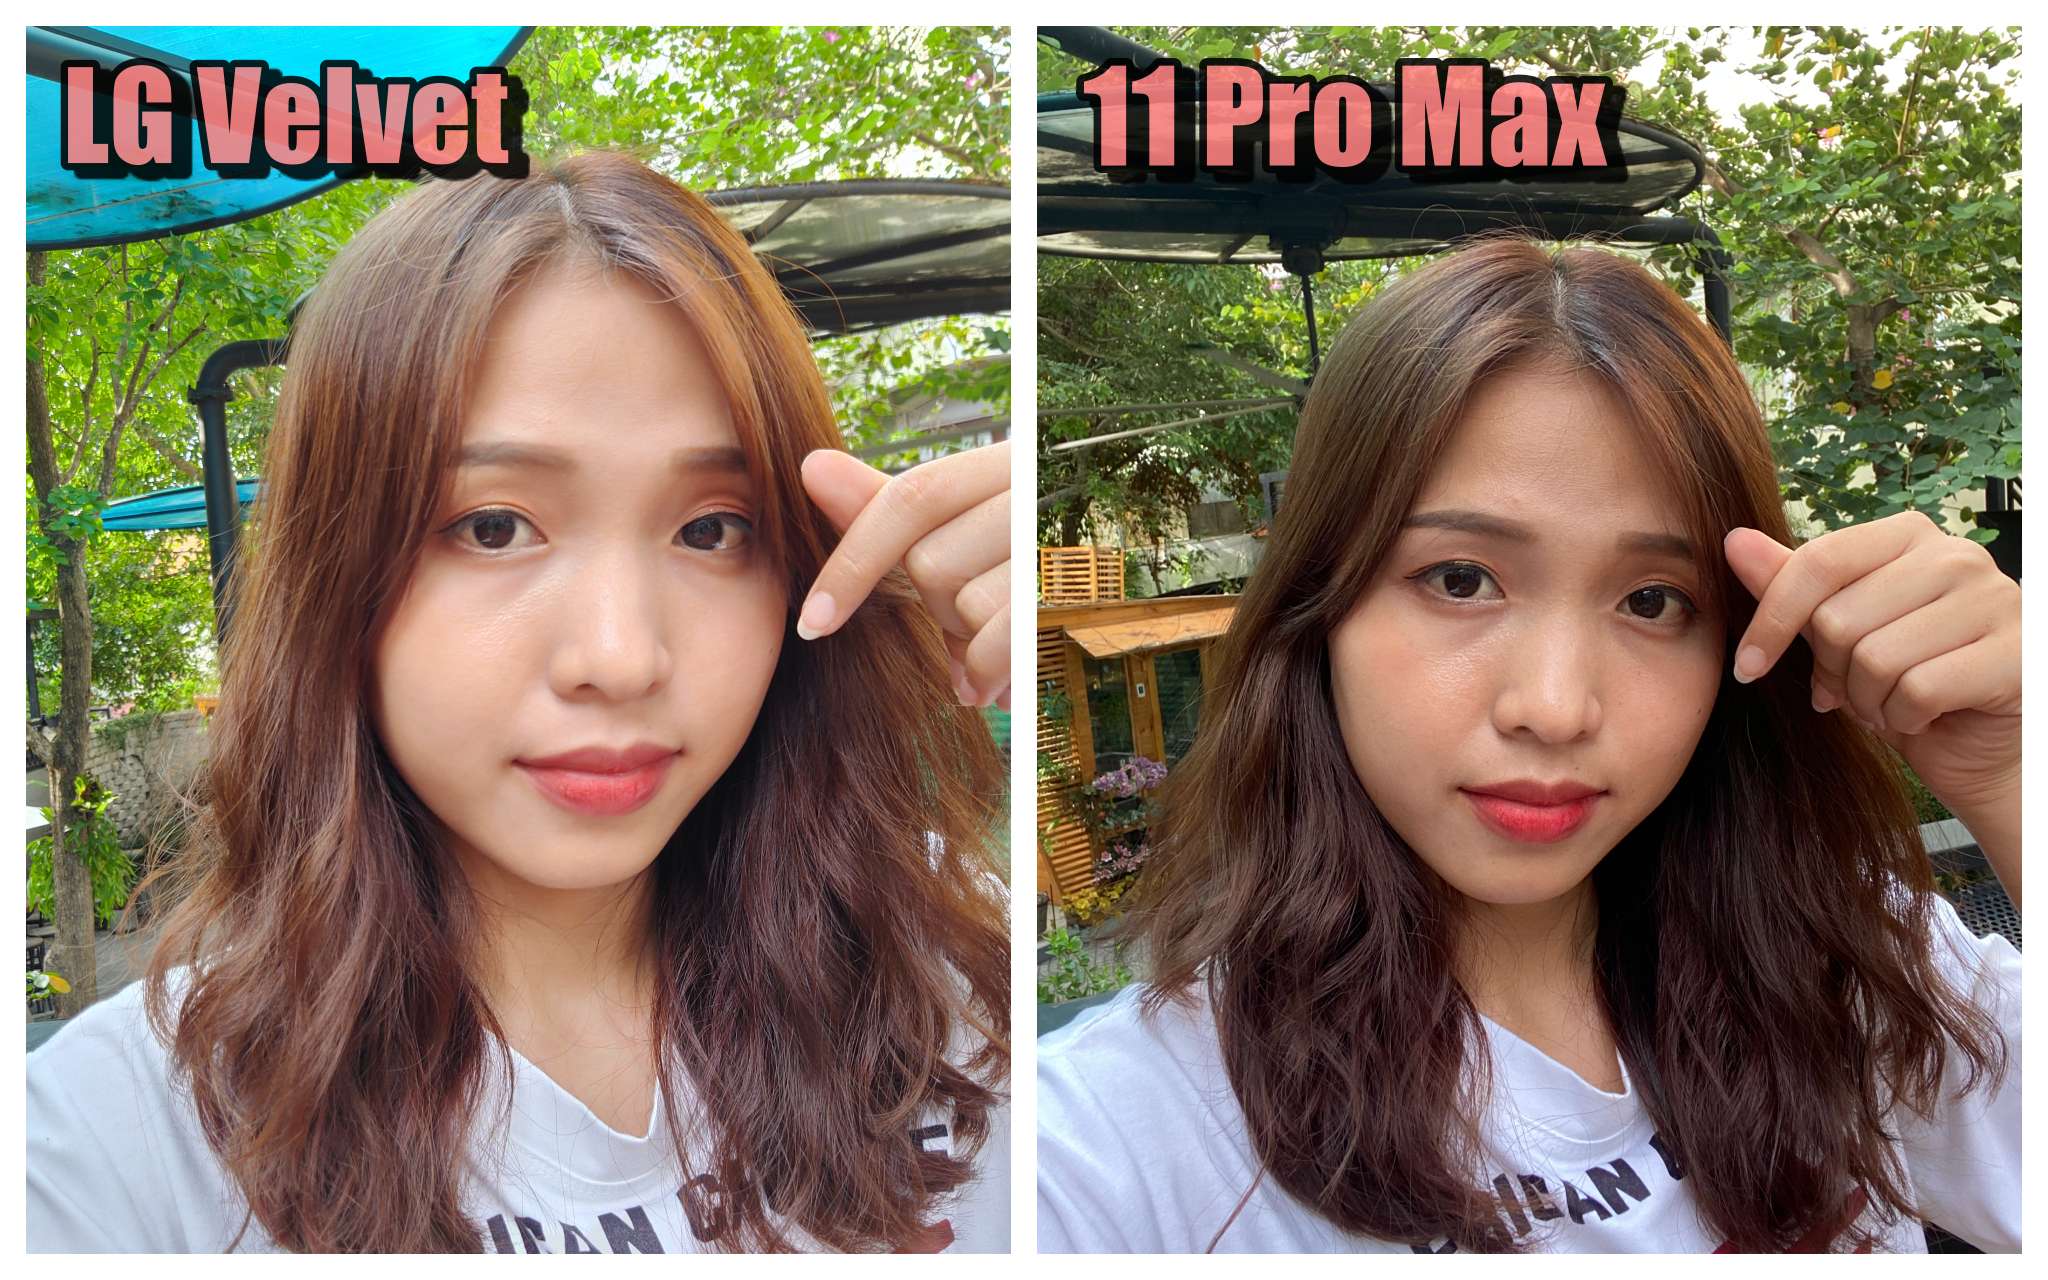 Ảnh selfie trên LG Velvet vs iPhone 11 Pro Max: rất khác